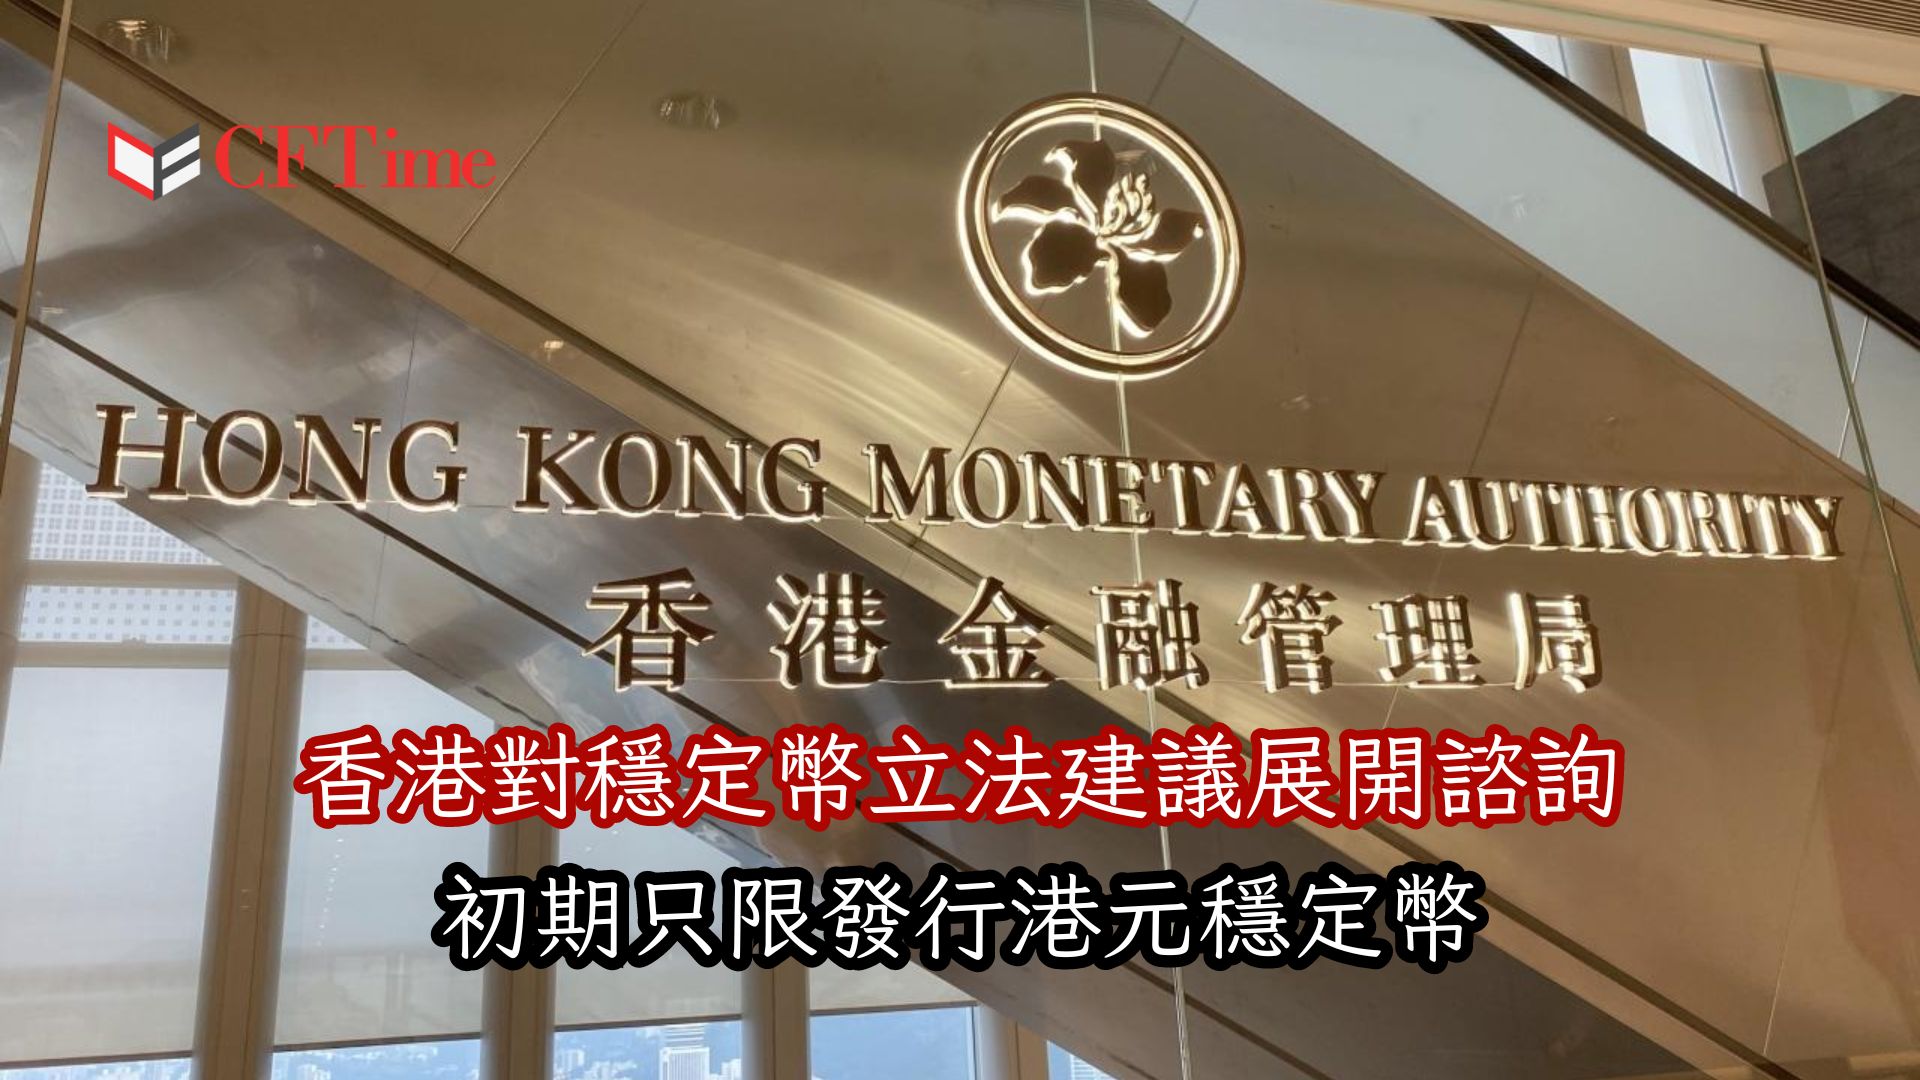 香港對穩定幣立法建議展開諮詢